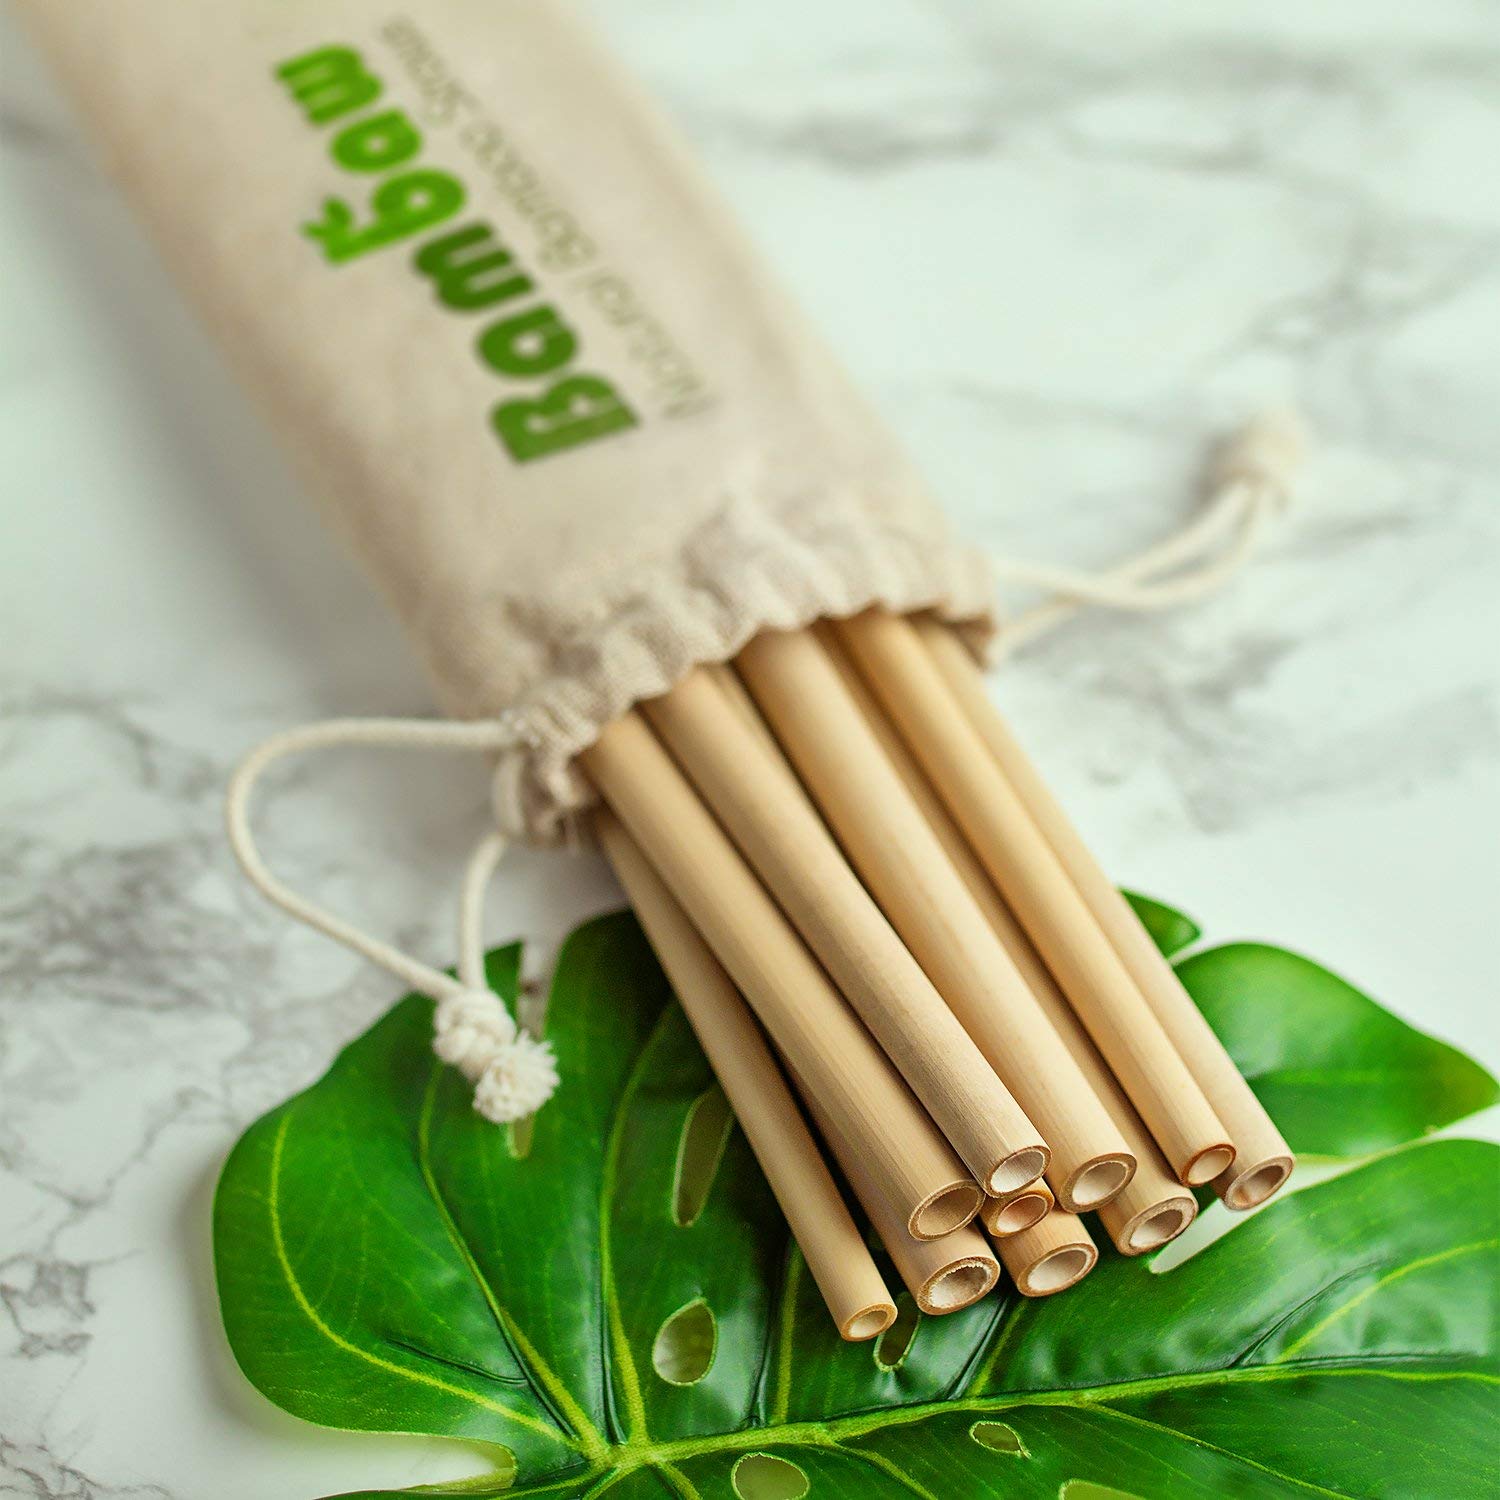 Les meilleurs pailles en bambou - geste eco-responsable Pailles réutilisables et écologiques en Bambou. Lot de 12 + Goupillon